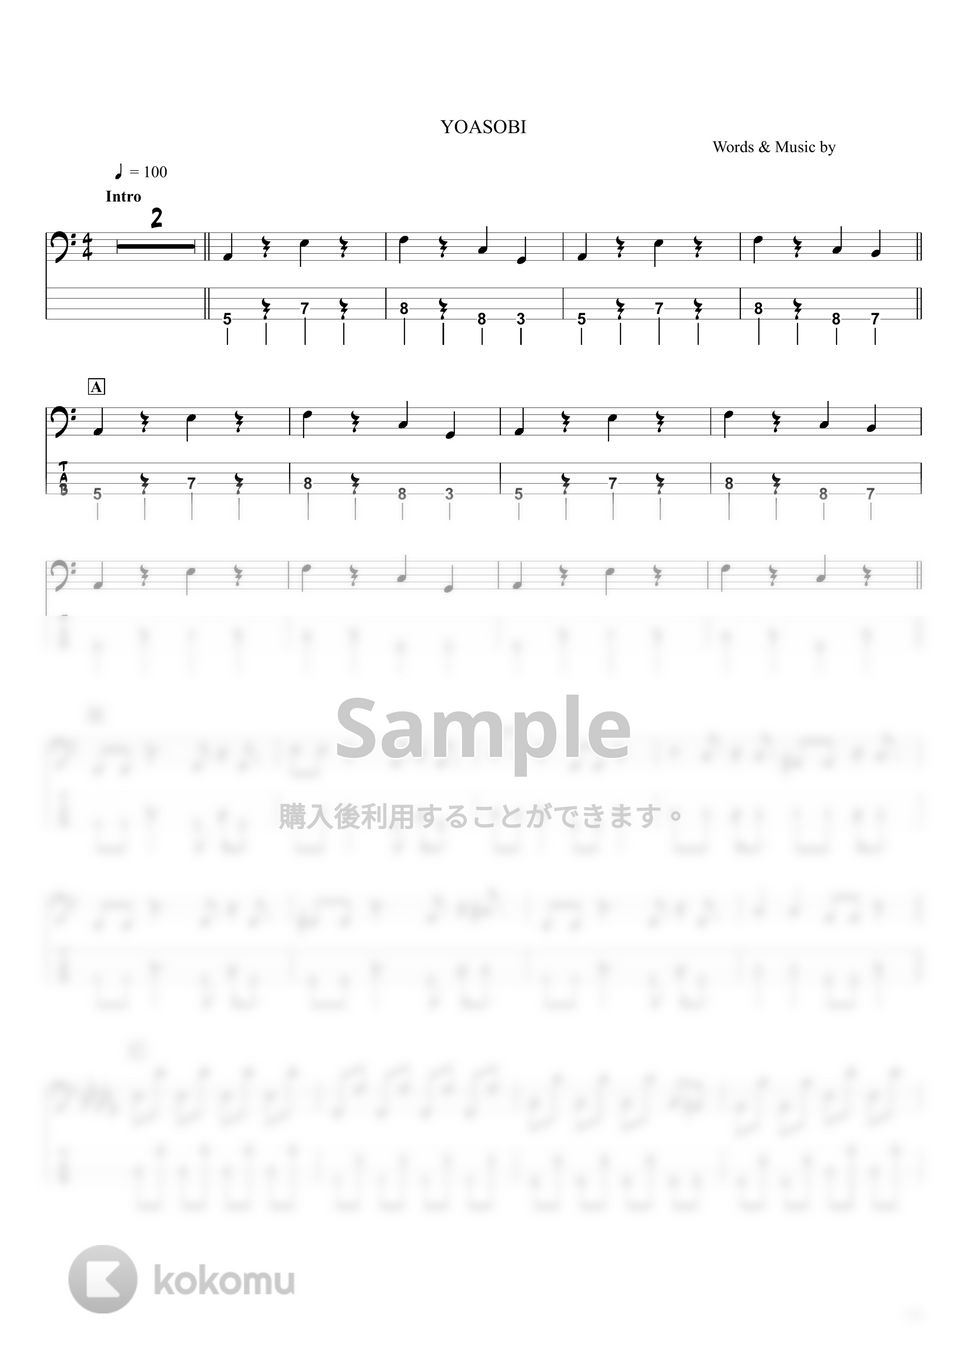 YOASOBI - ハルカ (ベースTAB譜 / ☆4弦ベース対応) by swbass